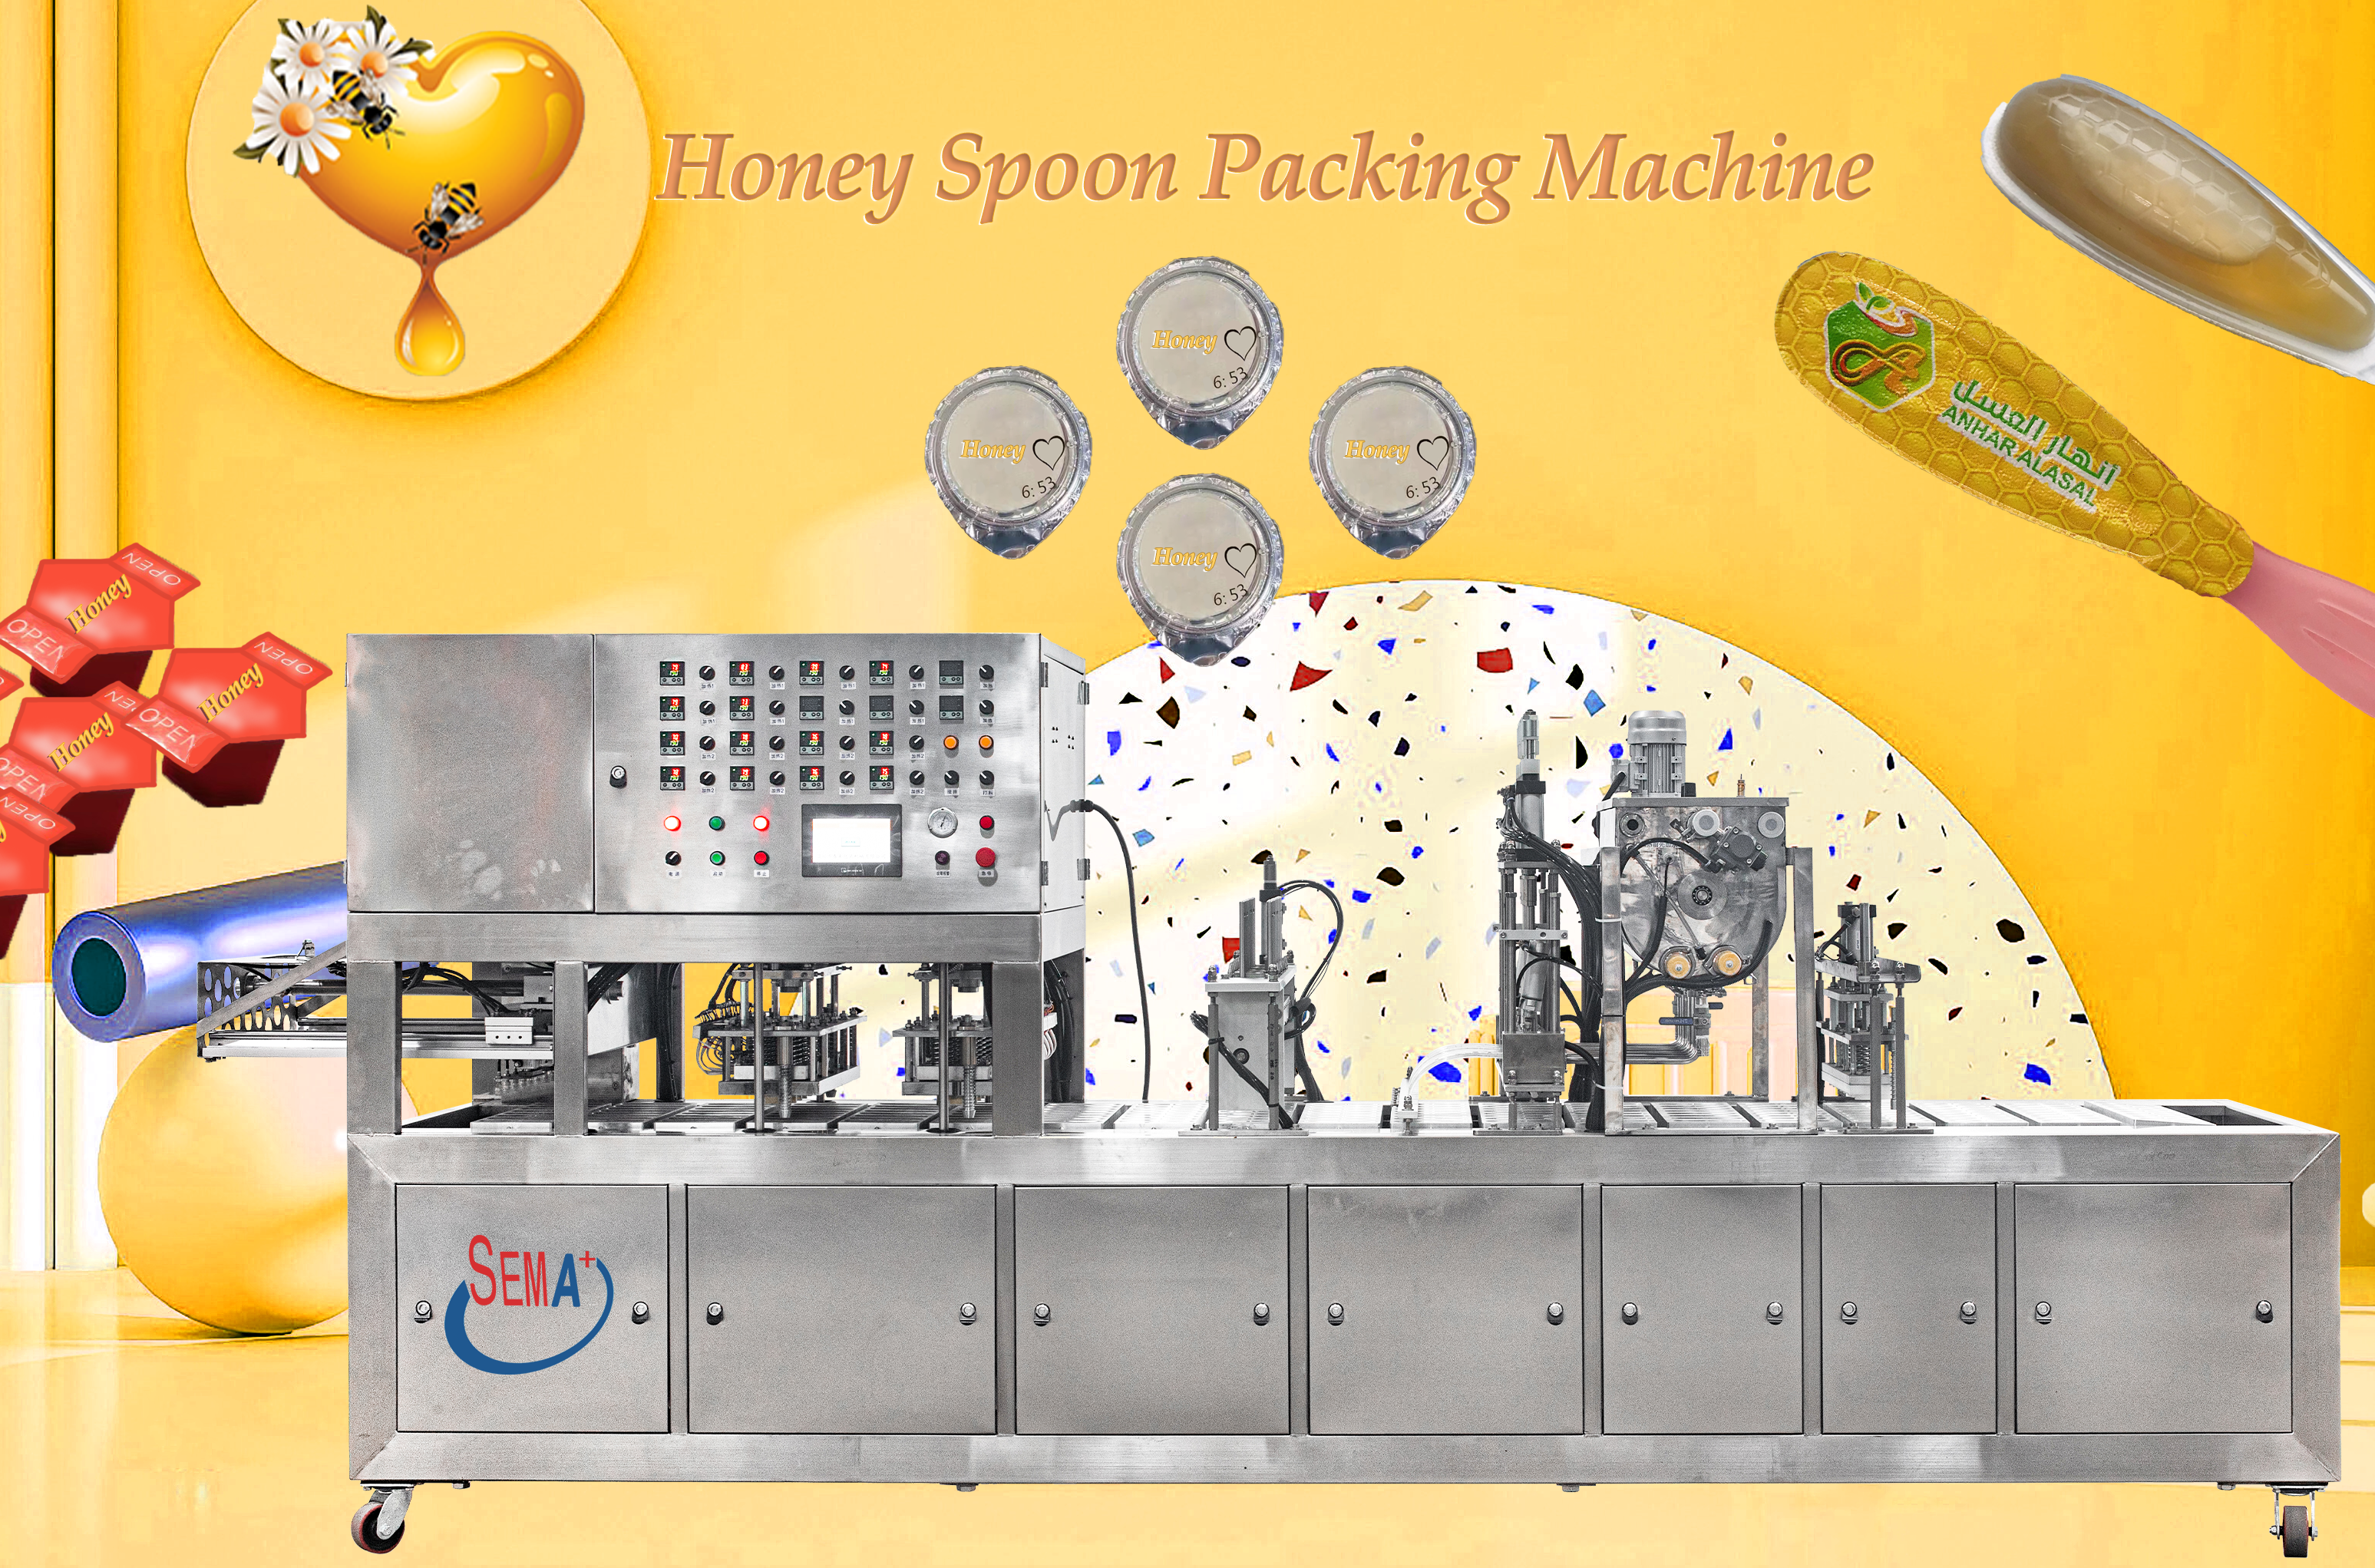 Honey spoon packing machine